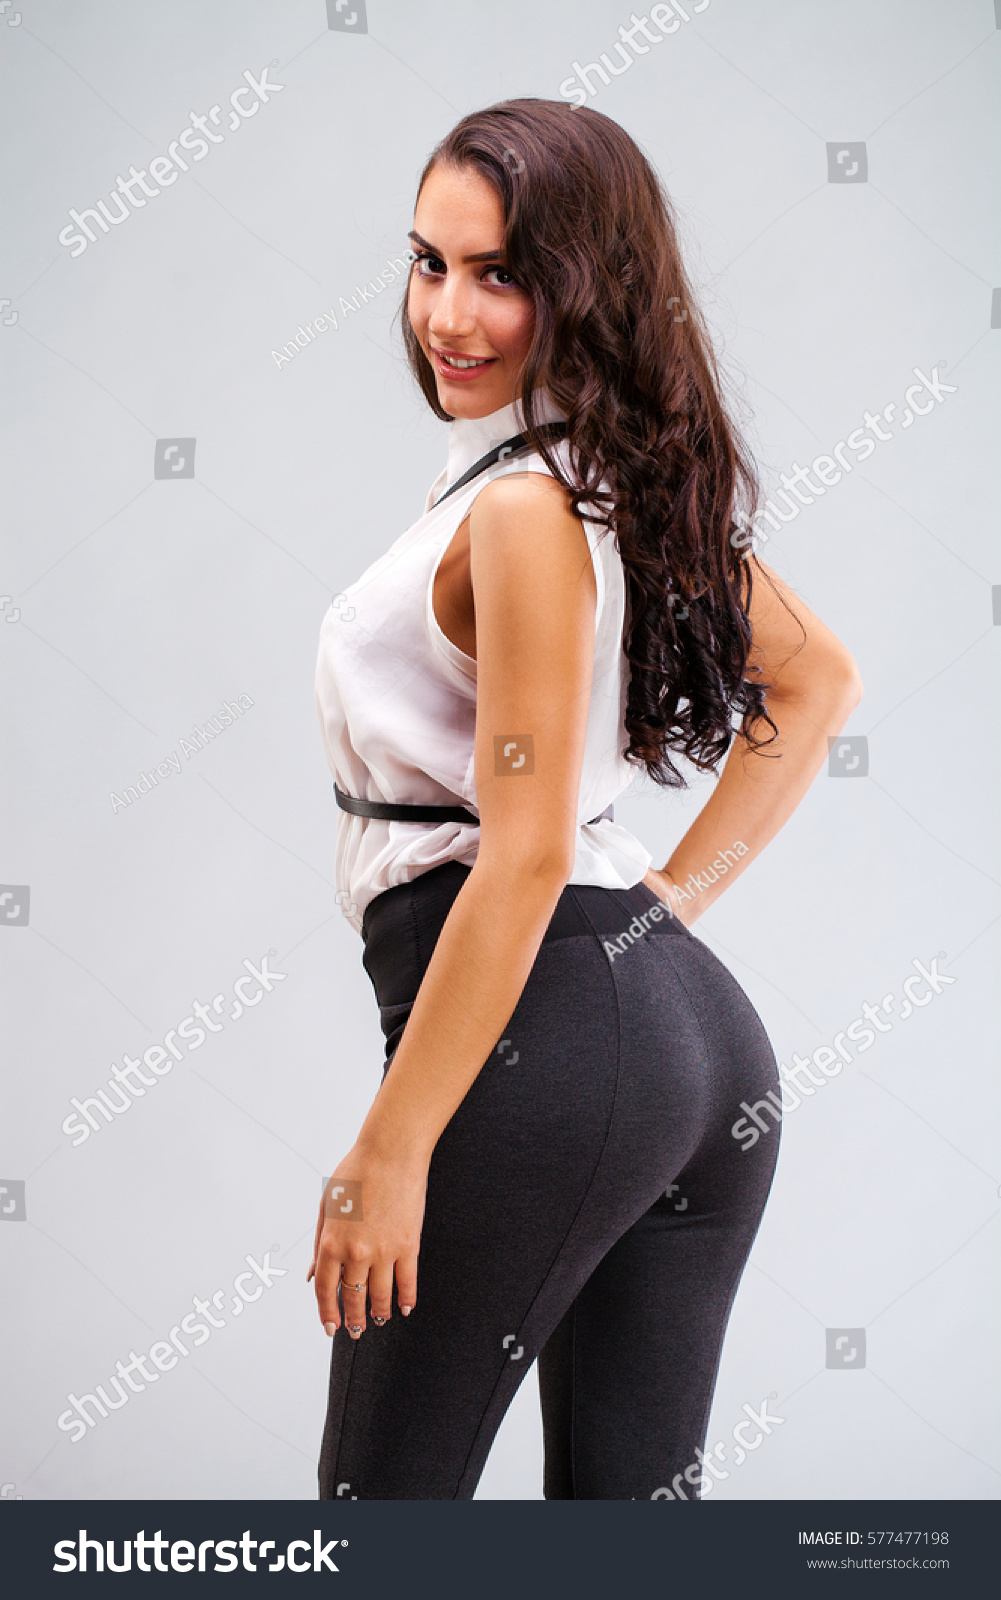 That big ass girl